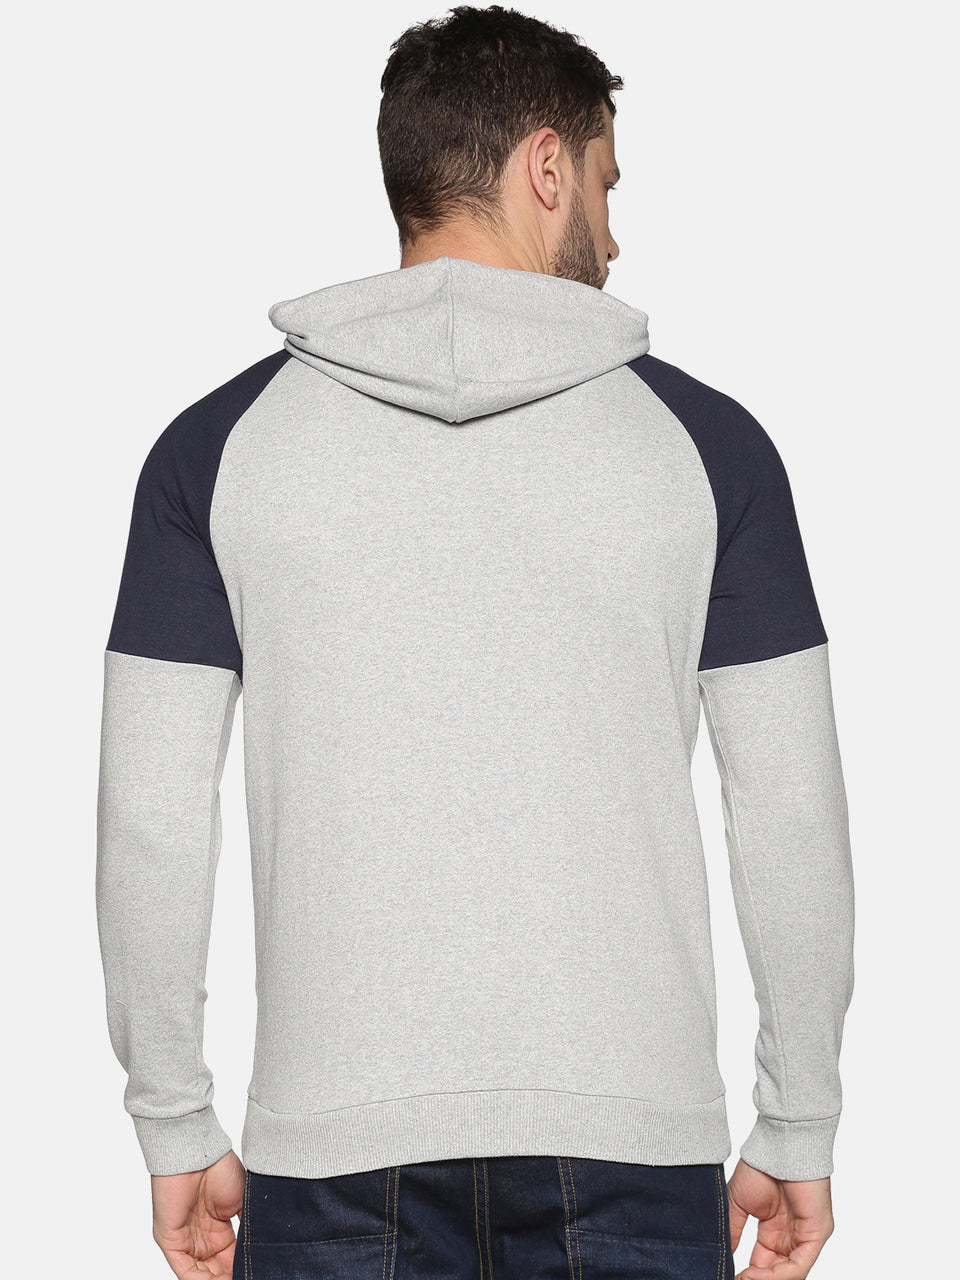 Men Grey Navy Blue Color Blocked Hooded Neck Full Sleeve Casual Front Open Zipper Hoodies Sweatshirt